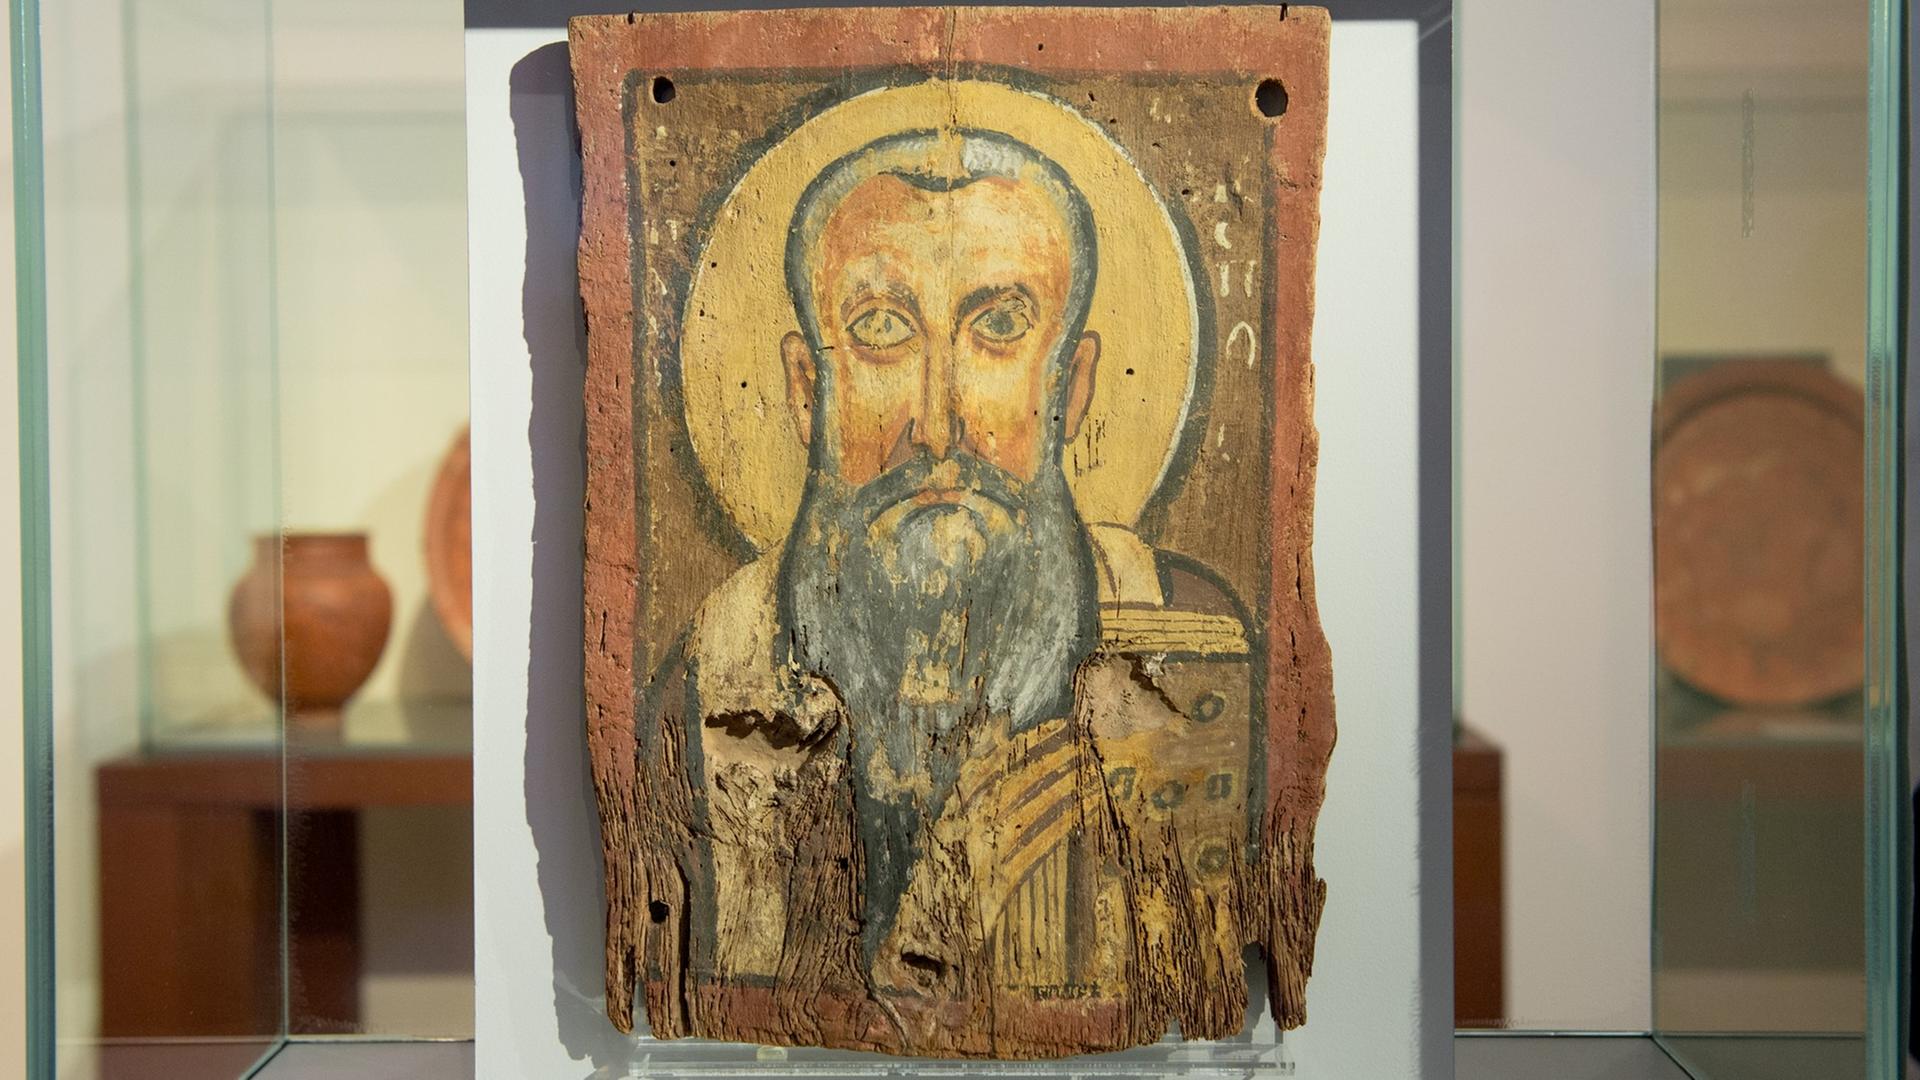 Die Ikone "Apa Abraham" in der Ausstellung "Ein Gott" im Berliner Bode-Museum. Ein gemaltes Bild eines Mannes mit grauem Bart auf rotem Stein, in einer Glasvitrine.